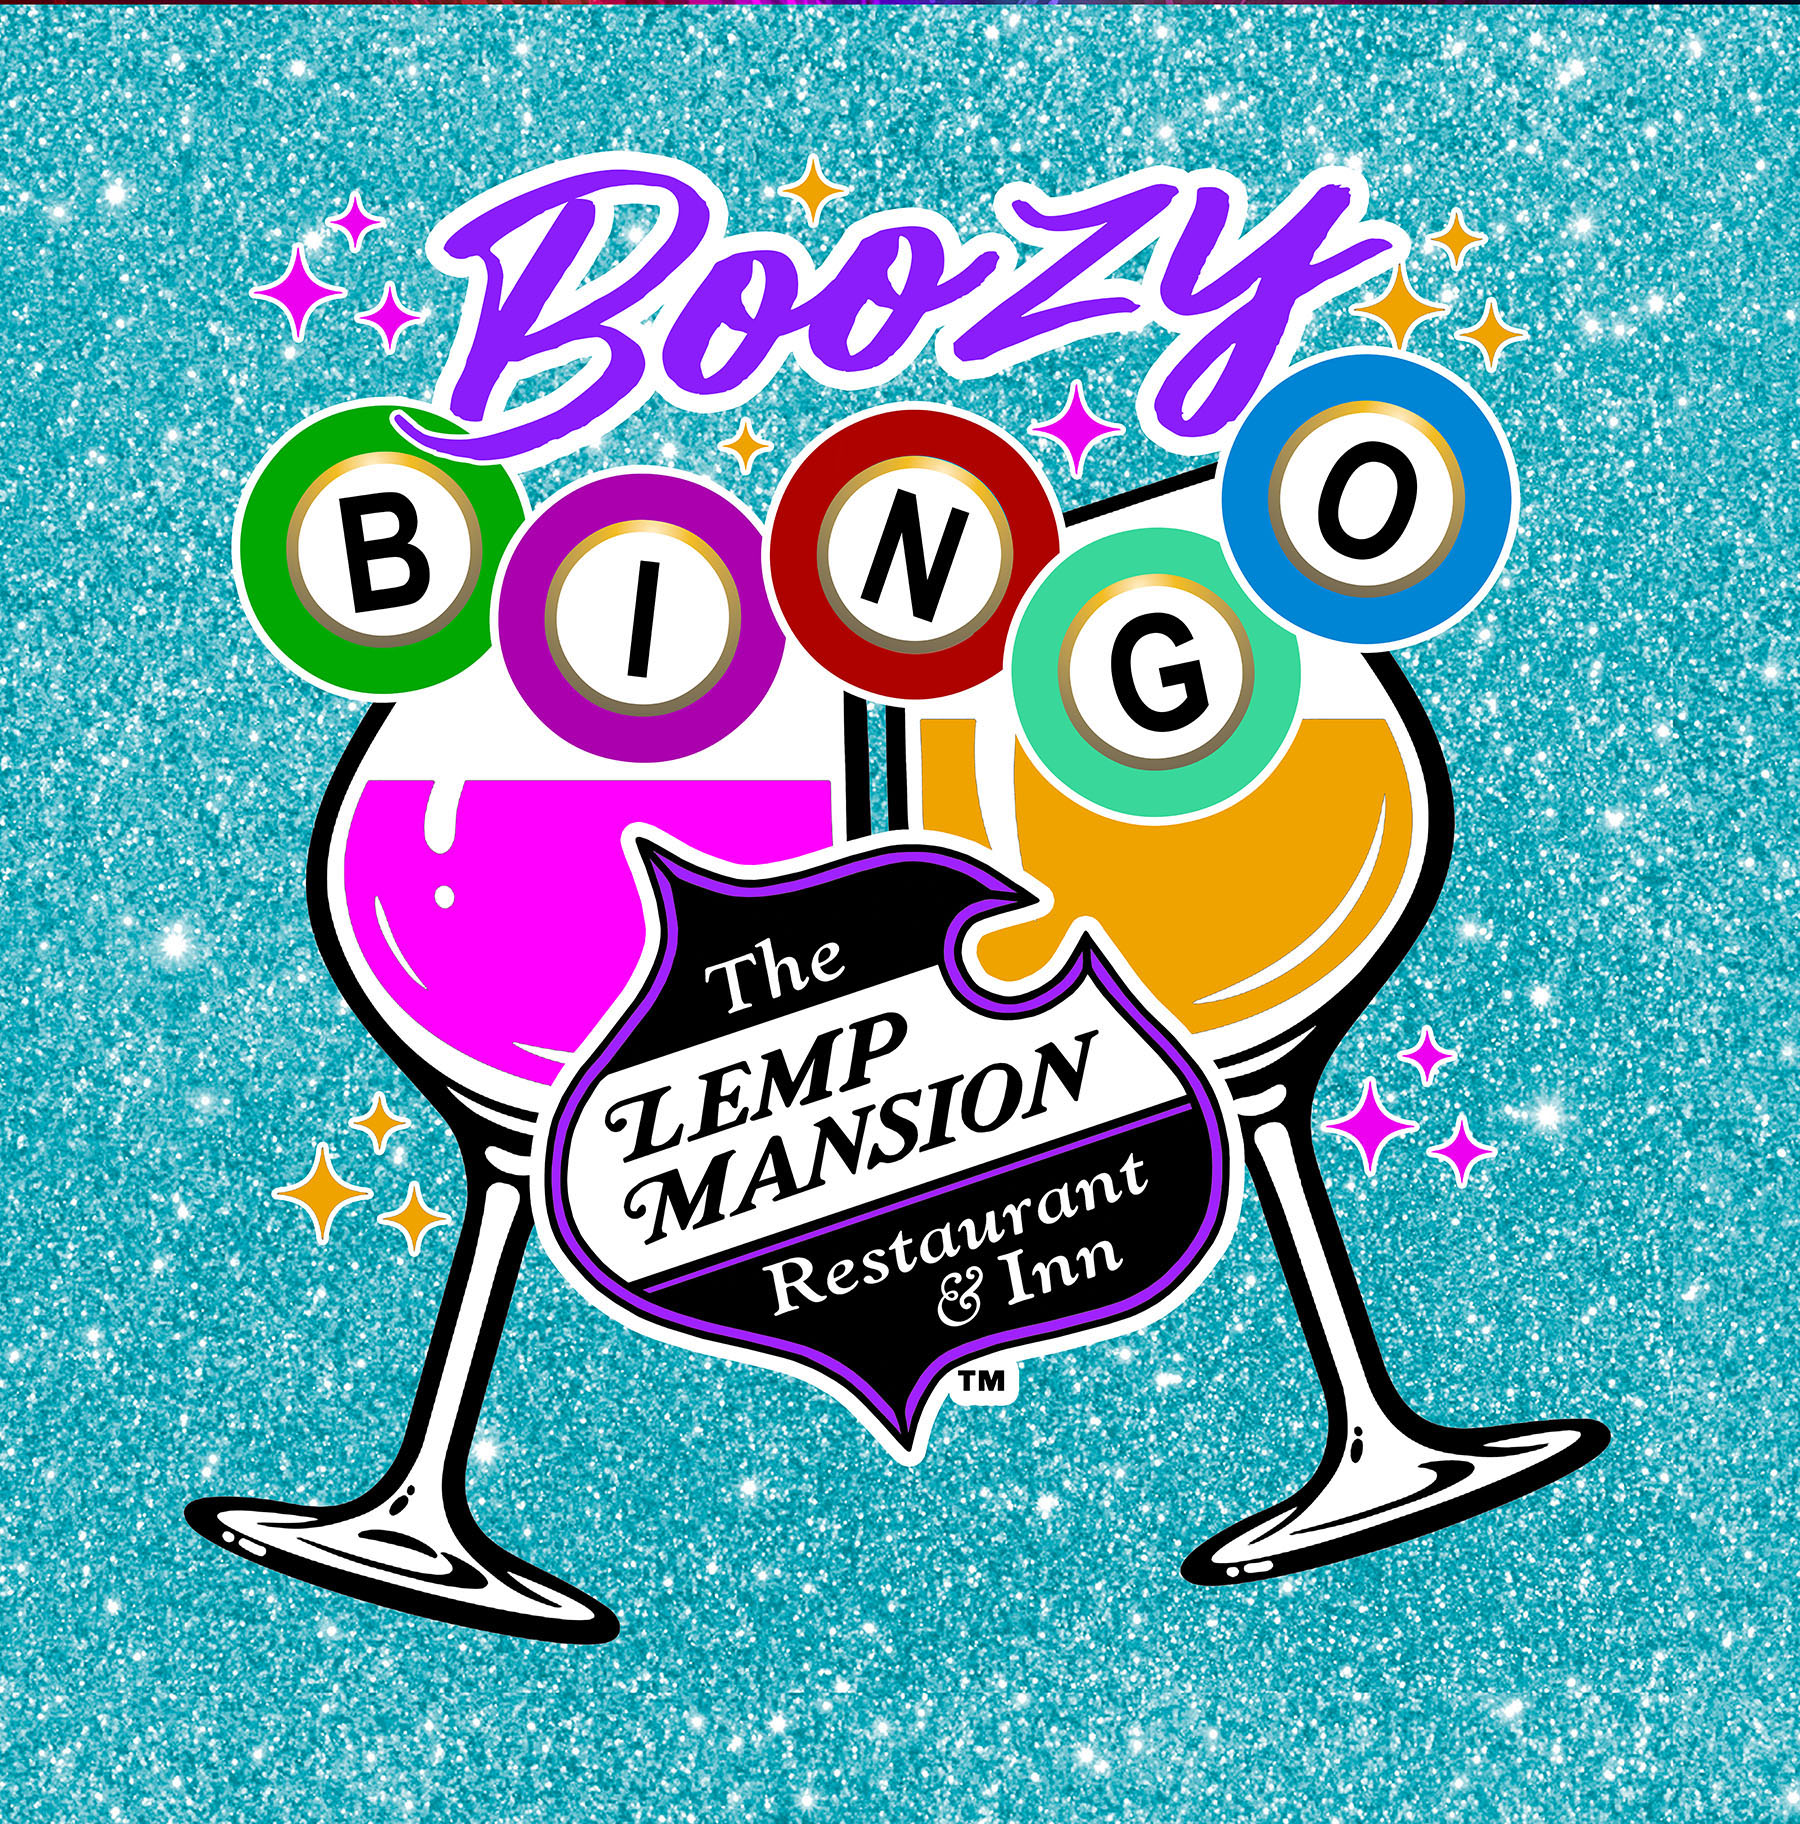 lemp mansion Boozy Bingo logo